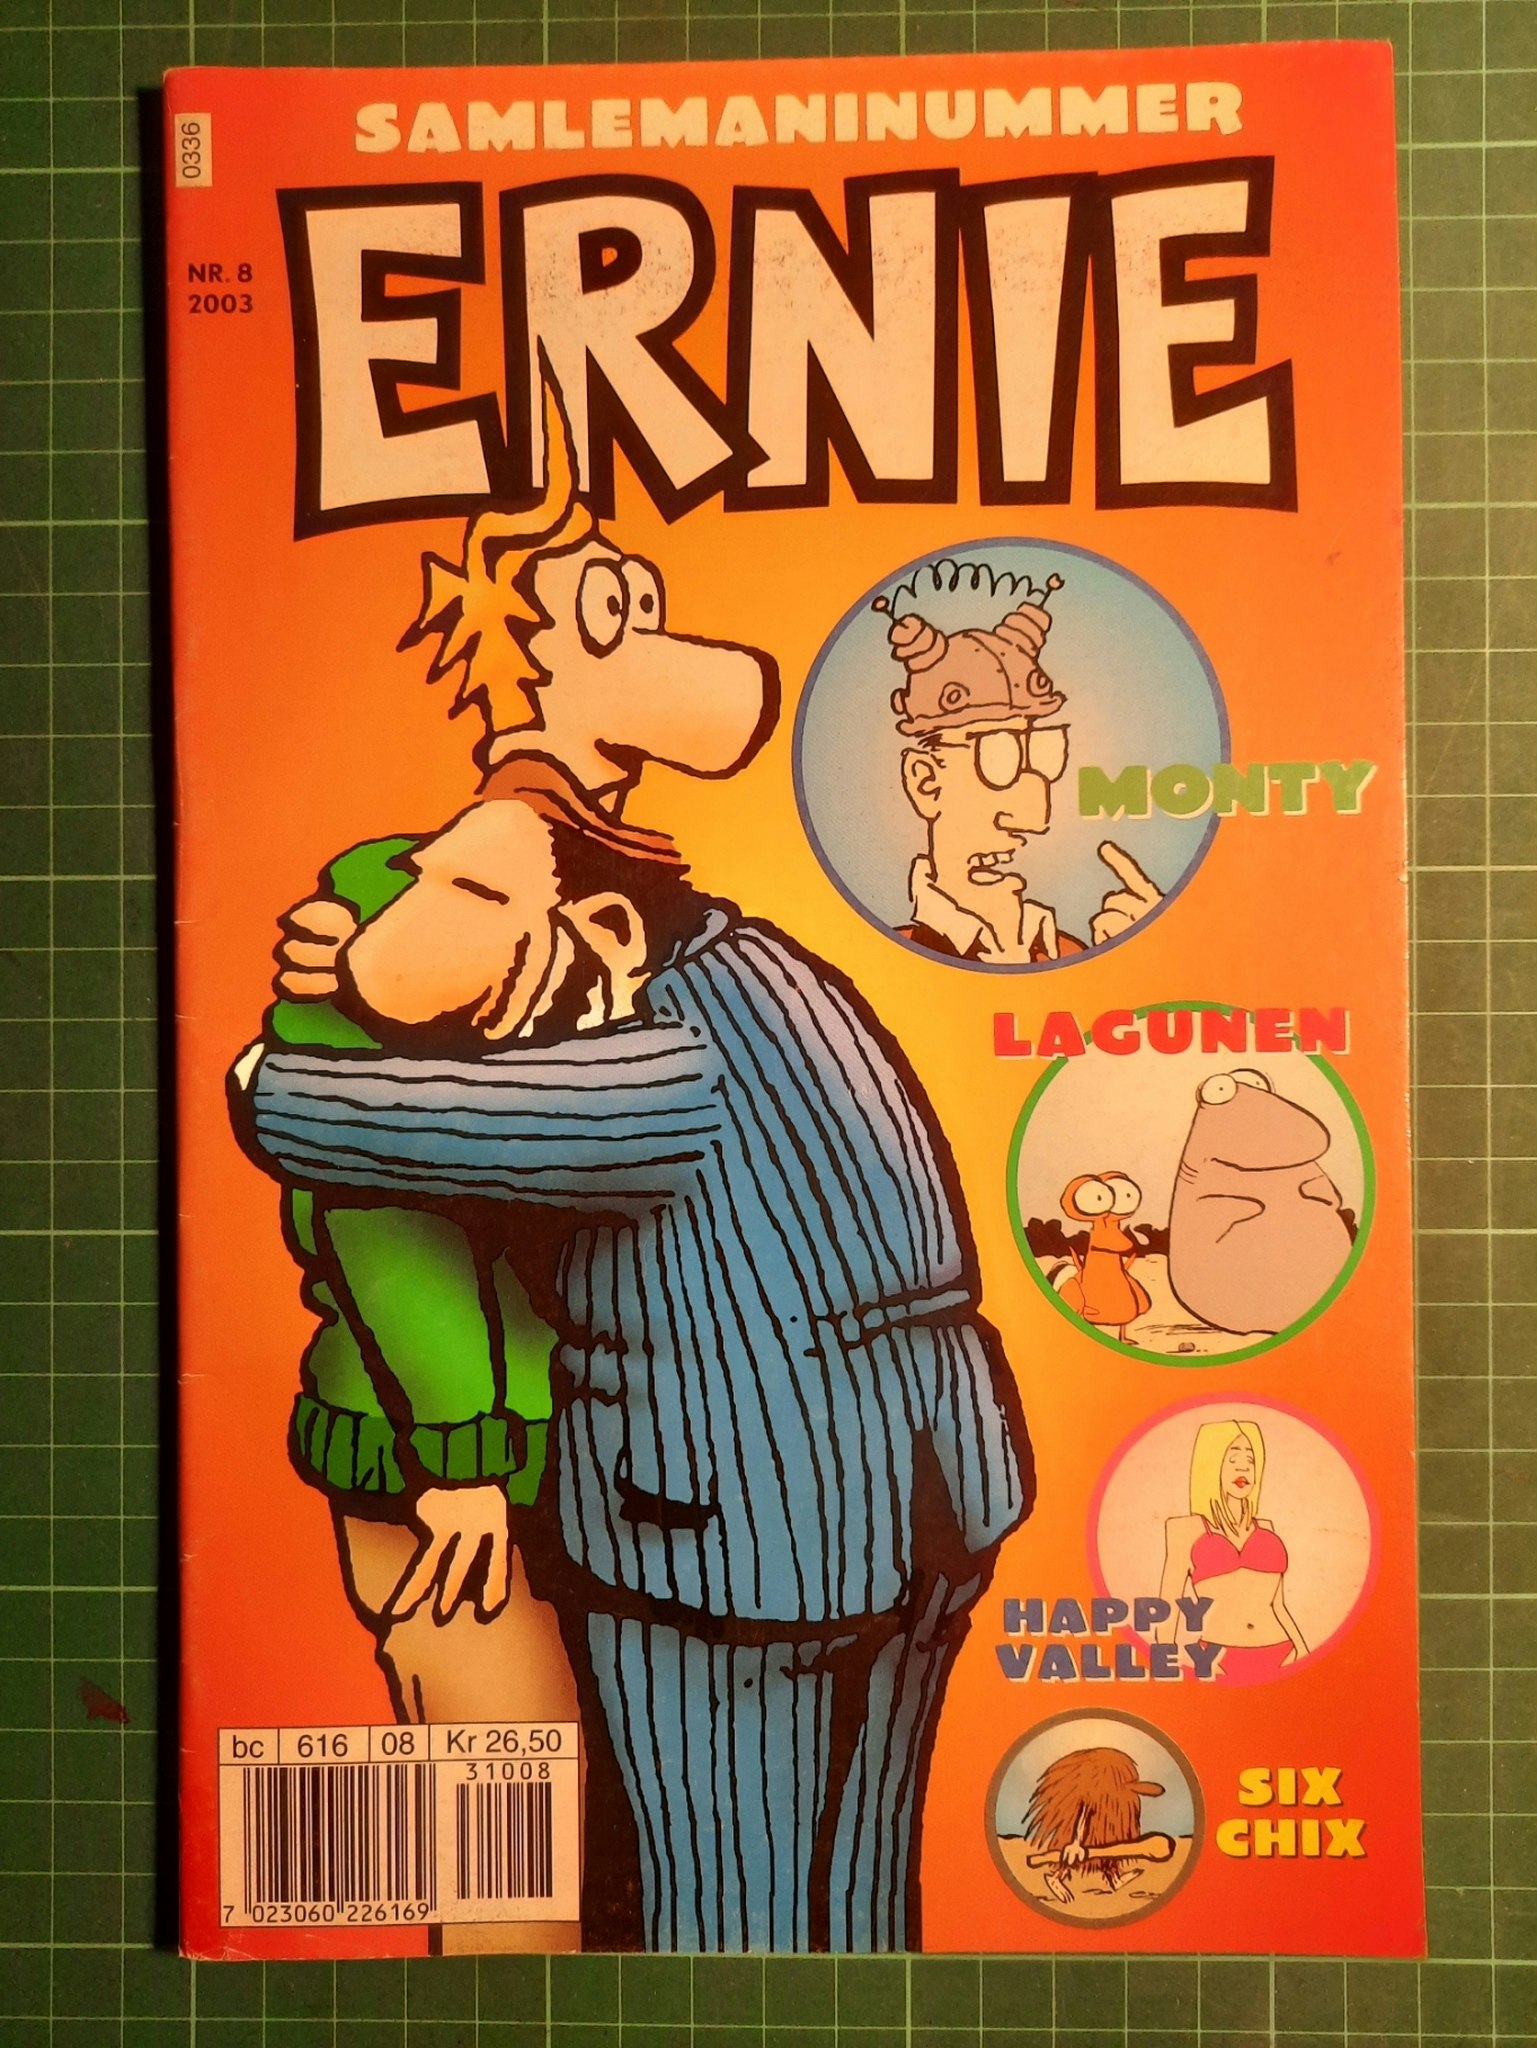 Ernie 2003 - 08